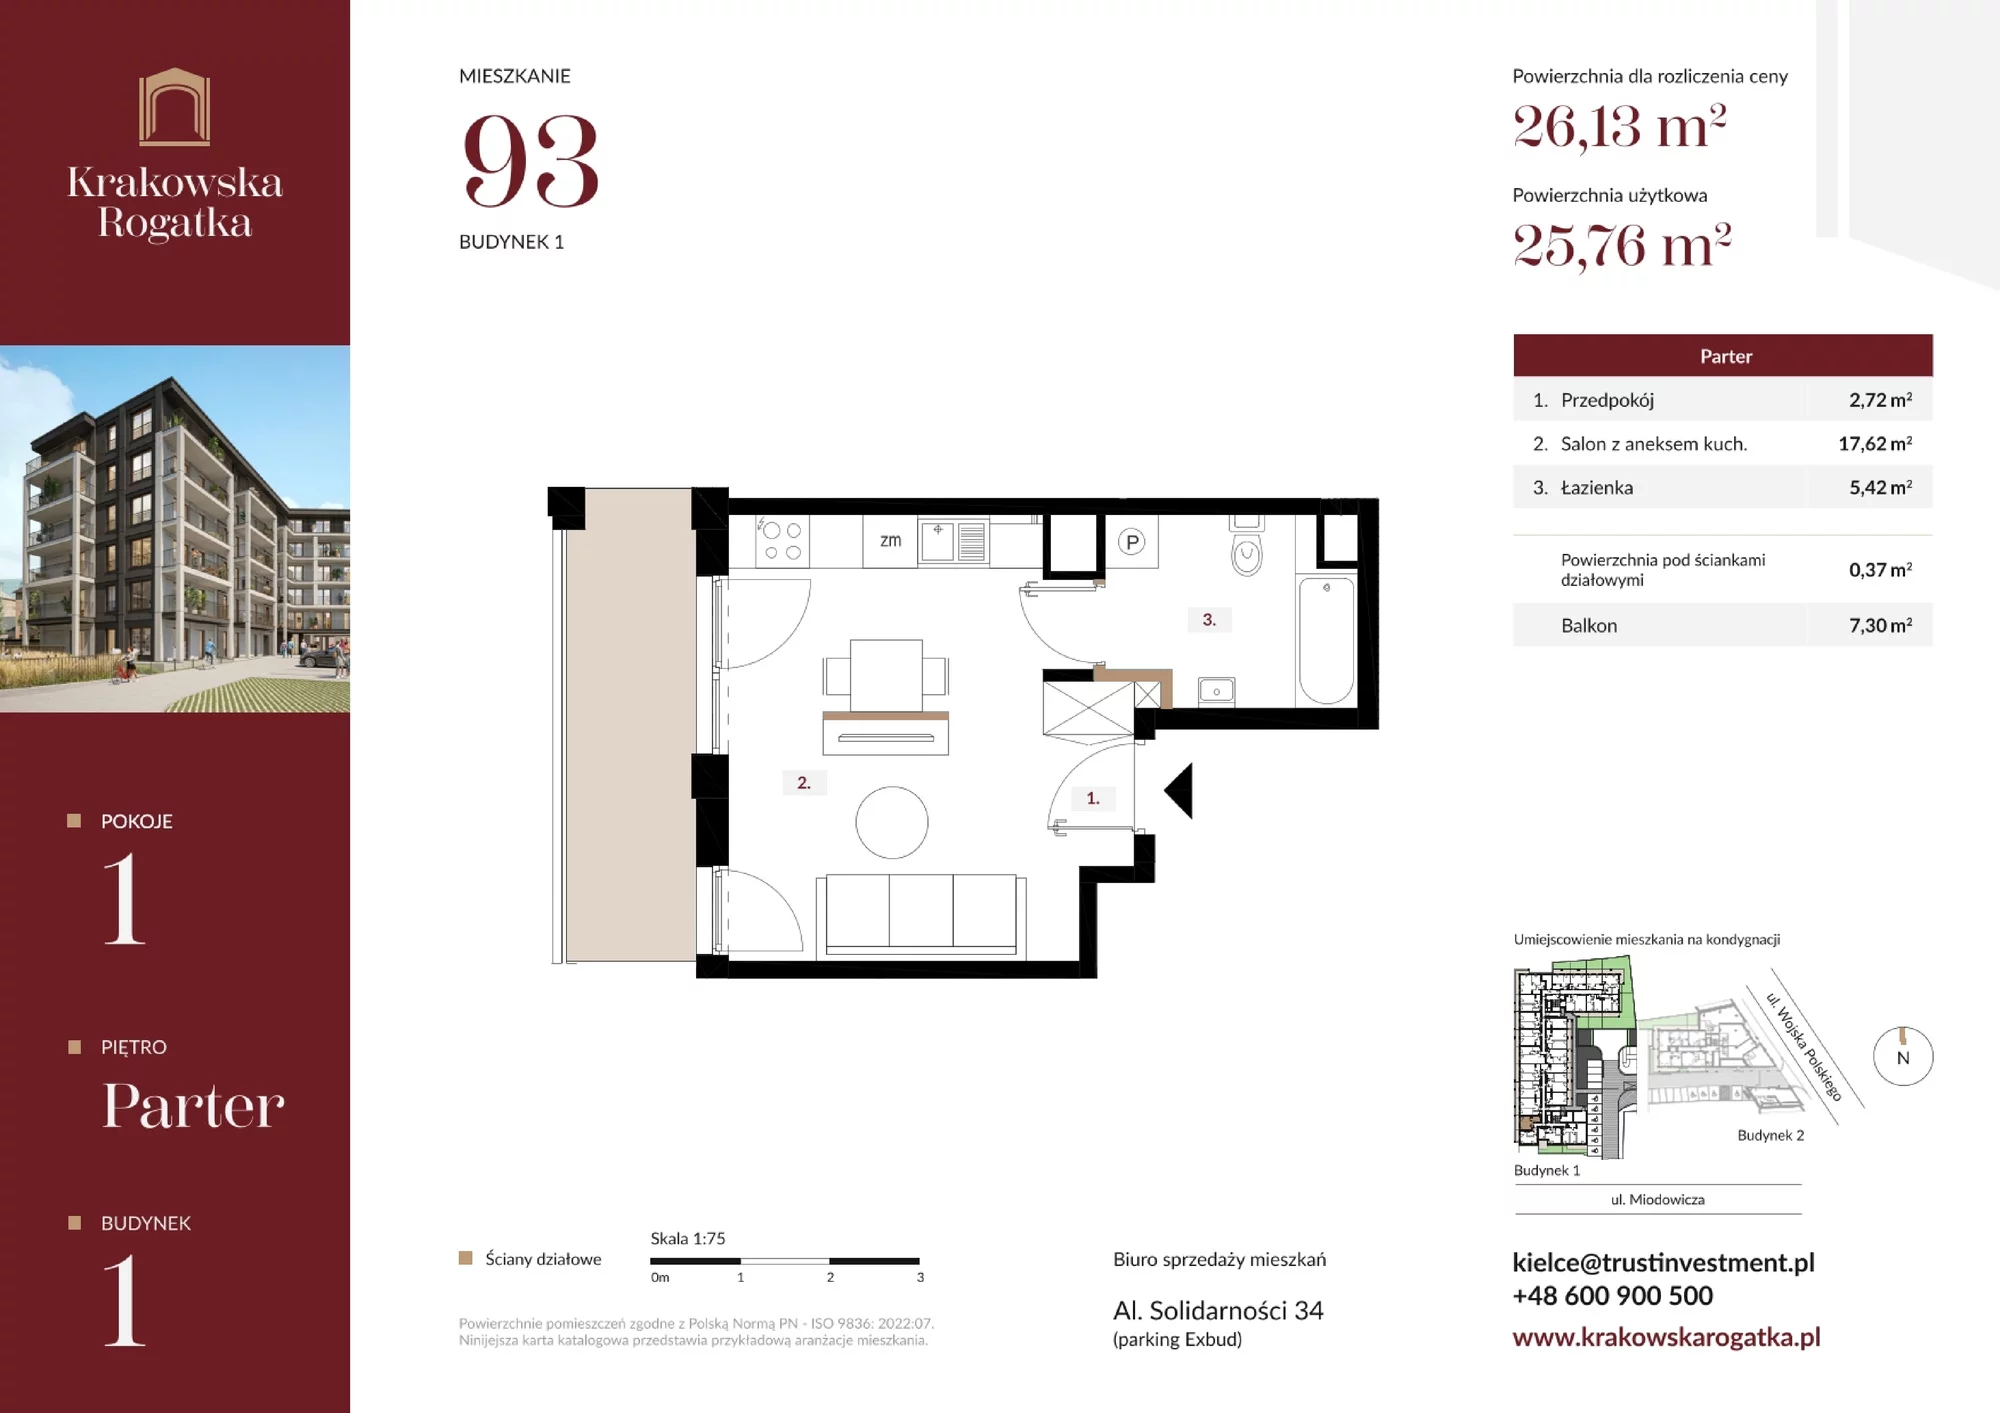 Mieszkanie 26,13 m², parter, oferta nr Budynek 1 Mieszkanie 93, Krakowska Rogatka, Kielce, ul. Miodowicza 1